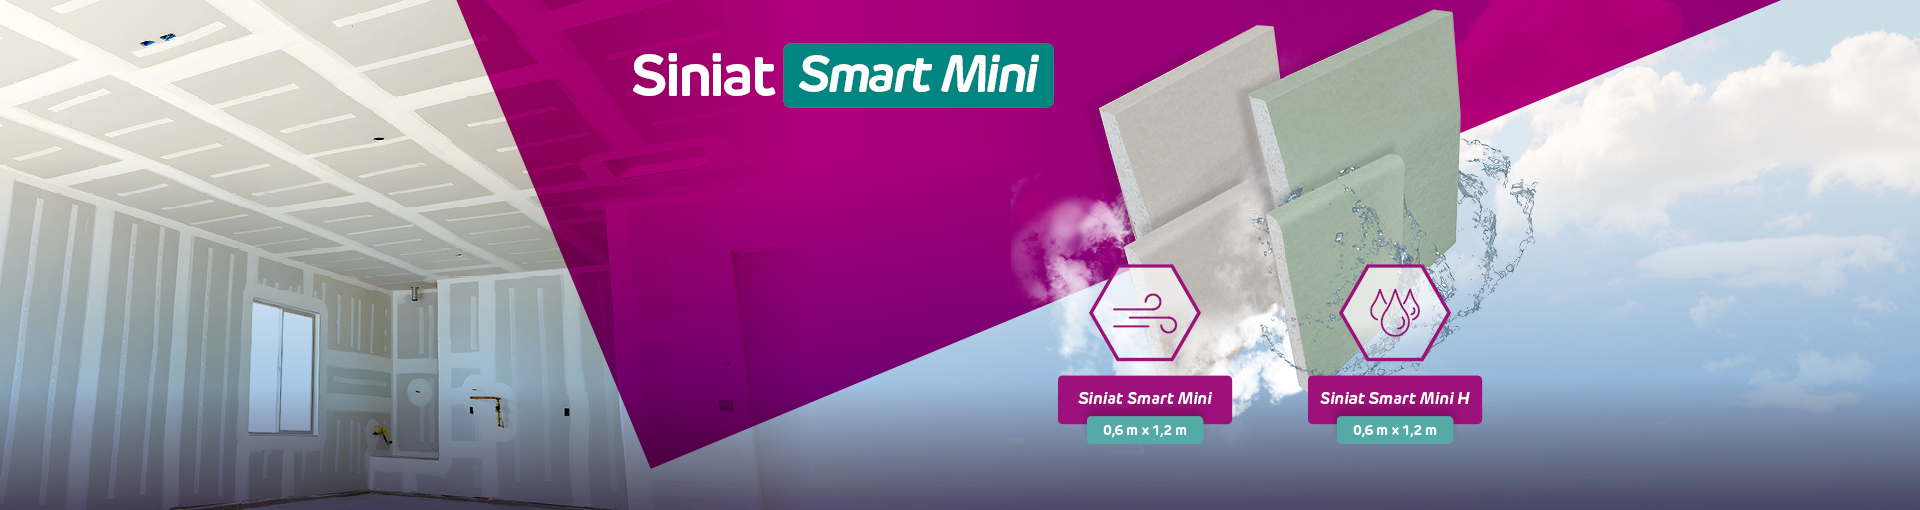 Siniat Smart Mini